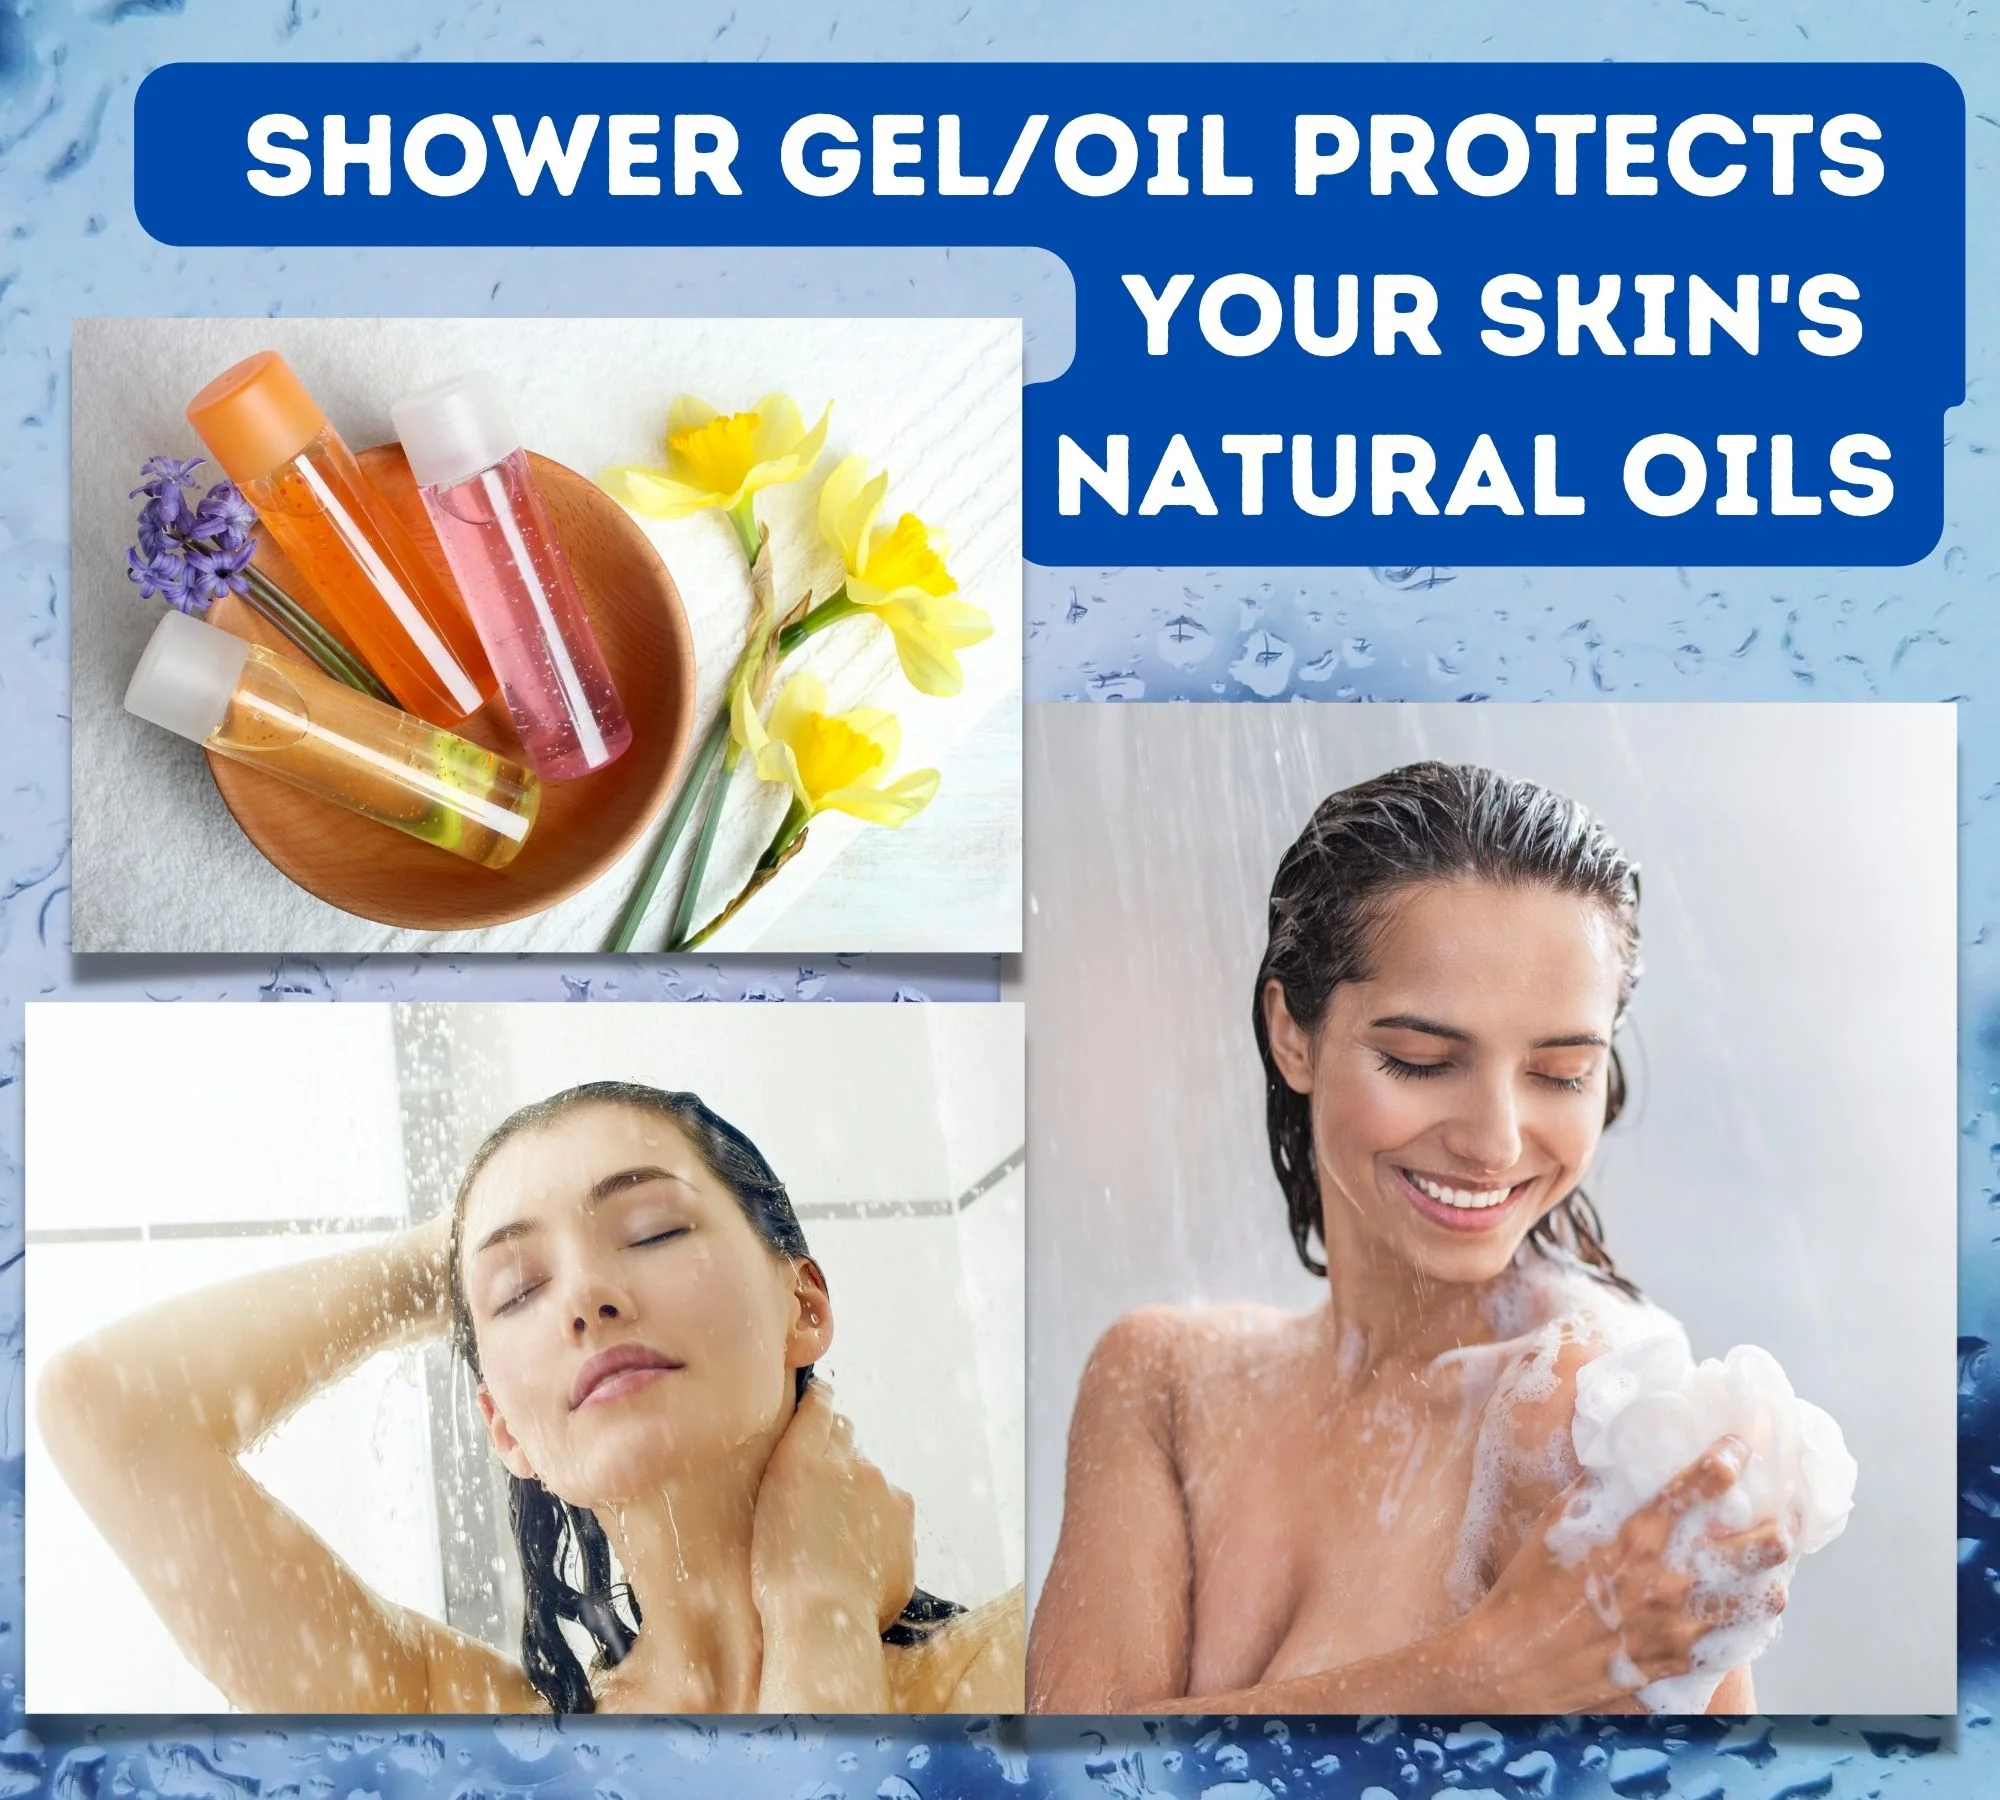 Shower gel benefits